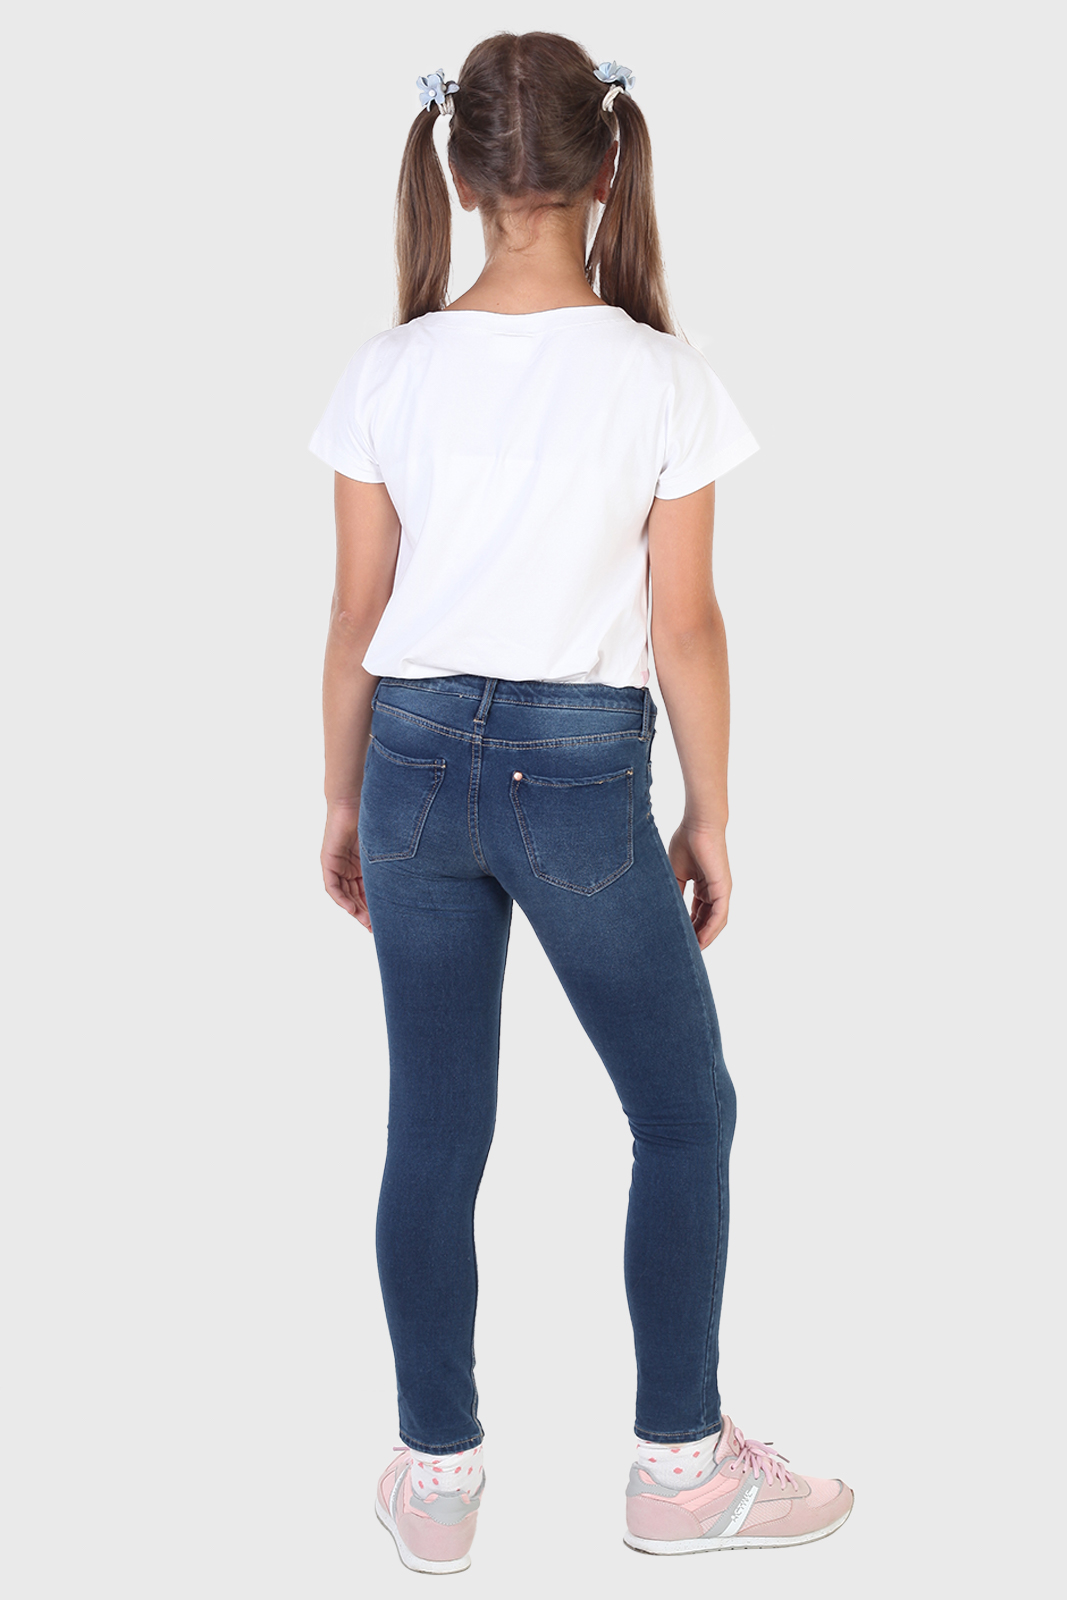 Купить в интернет магазине модные детские джинсы